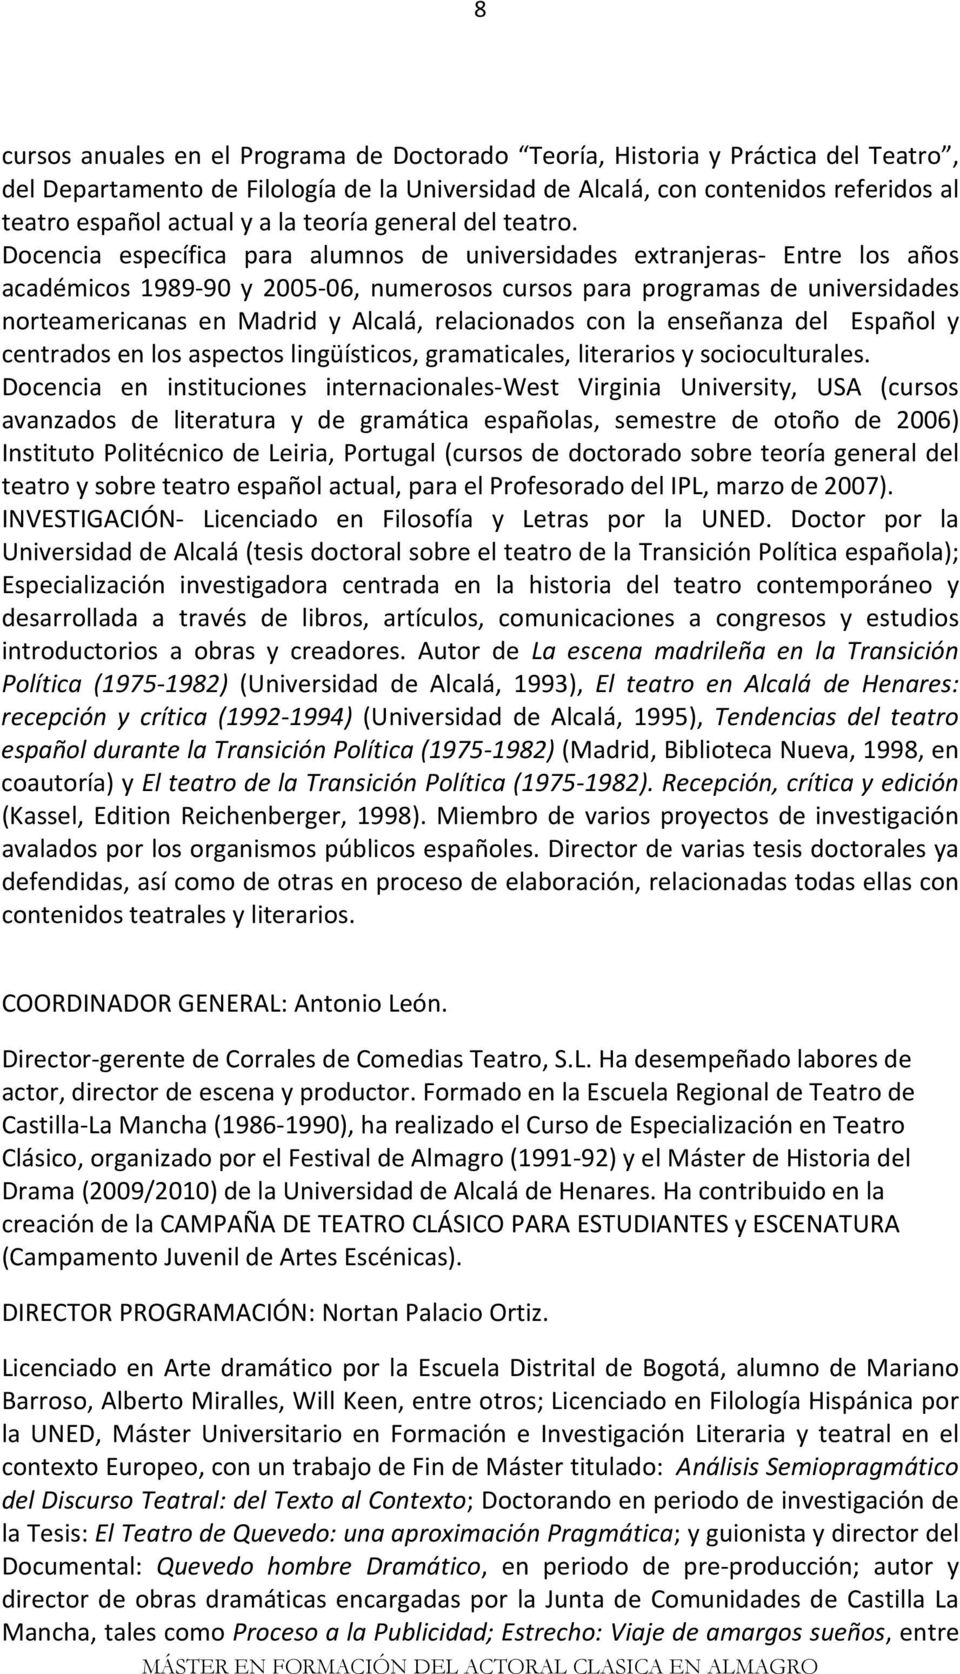 Docencia específica para alumnos de universidades extranjeras- Entre los años académicos 1989-90 y 2005-06, numerosos cursos para programas de universidades norteamericanas en Madrid y Alcalá,